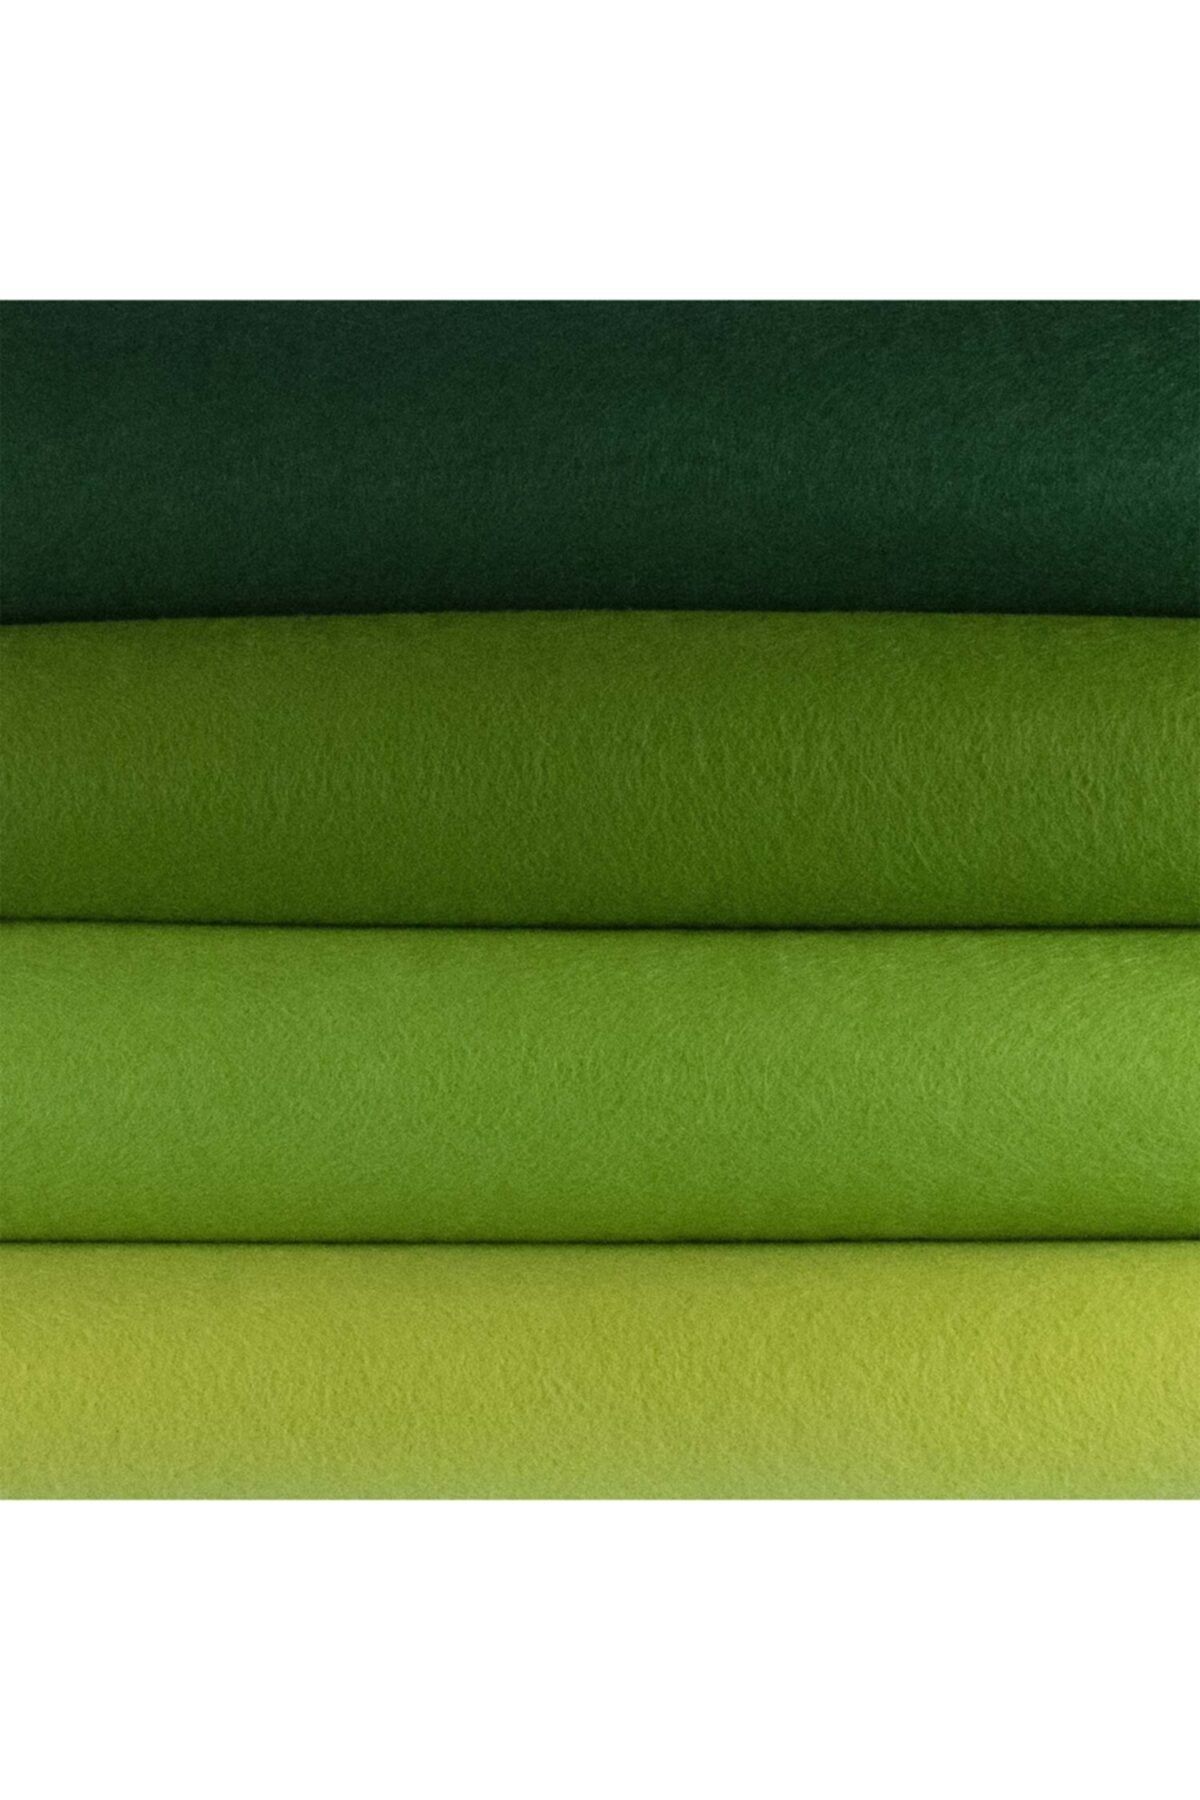 toptankece Ince Yumuşak Keçe Yeşilli Tonlar - 4 Renk - 50x50 Cm - Hobi Keçe